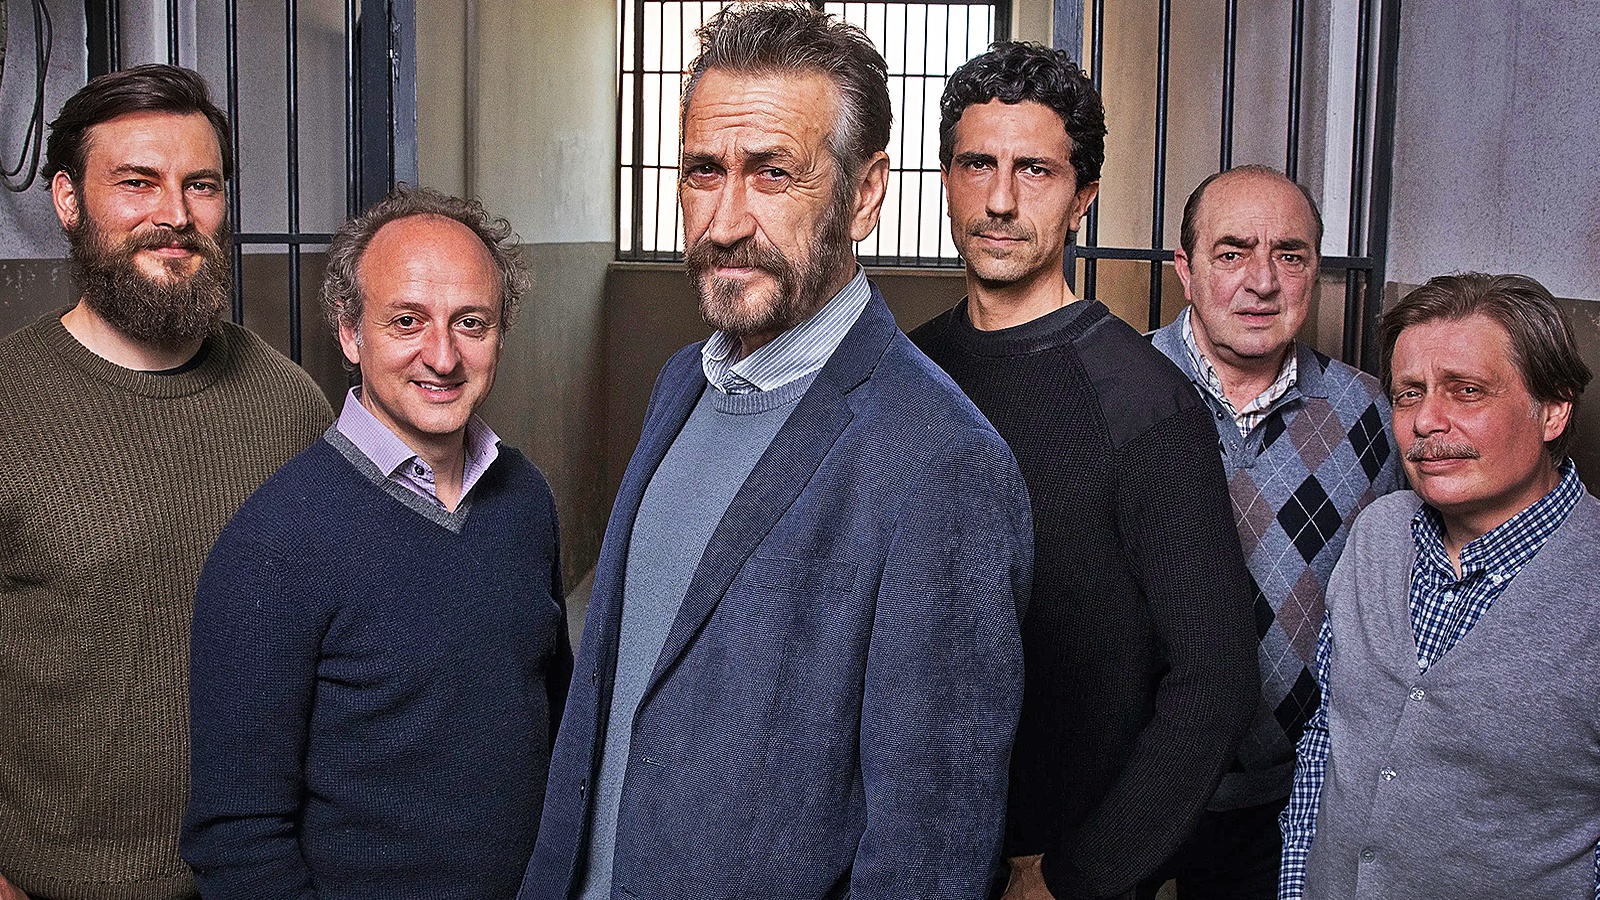 Rocco Schiavone 5, la recensione: il viaggio continua per il vicequestore più anticonformista della tv